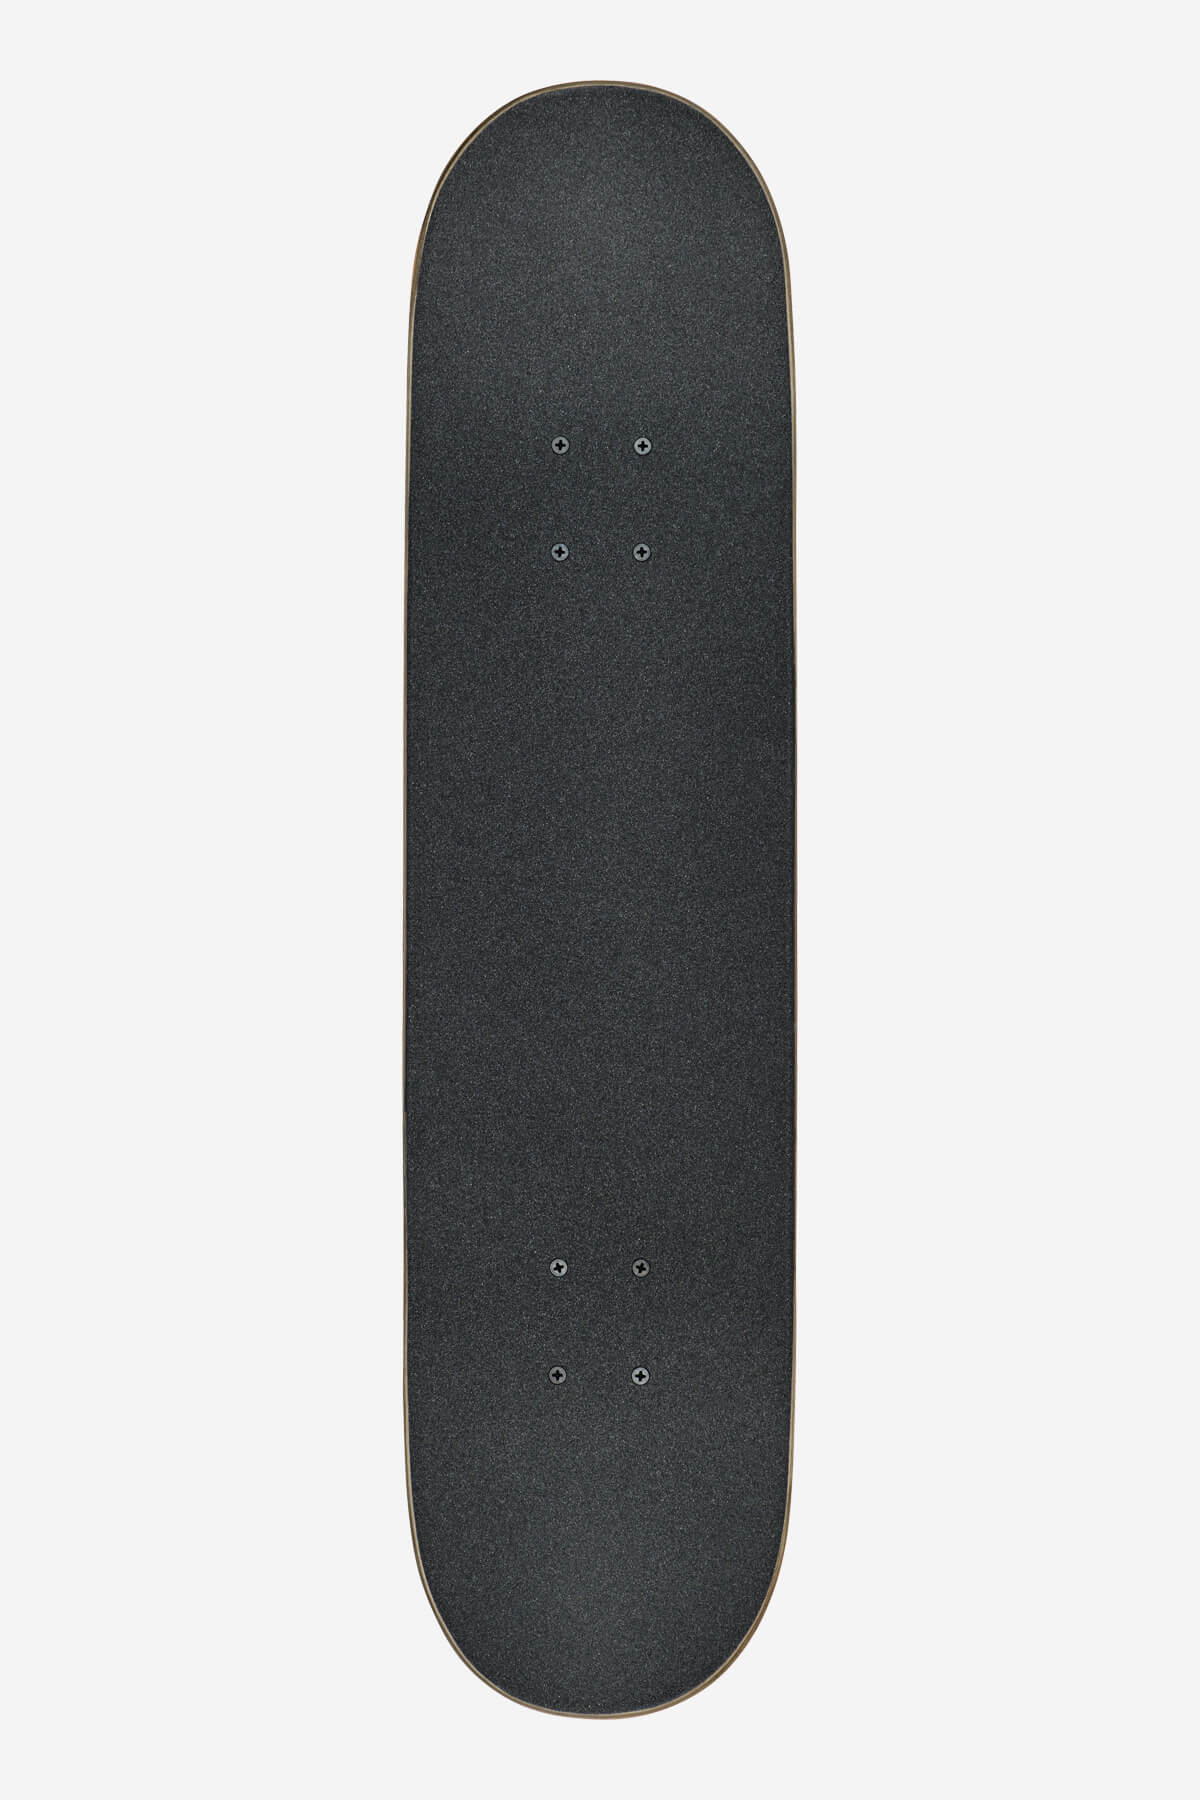 goodstock topaz 7.75" complet skateboard